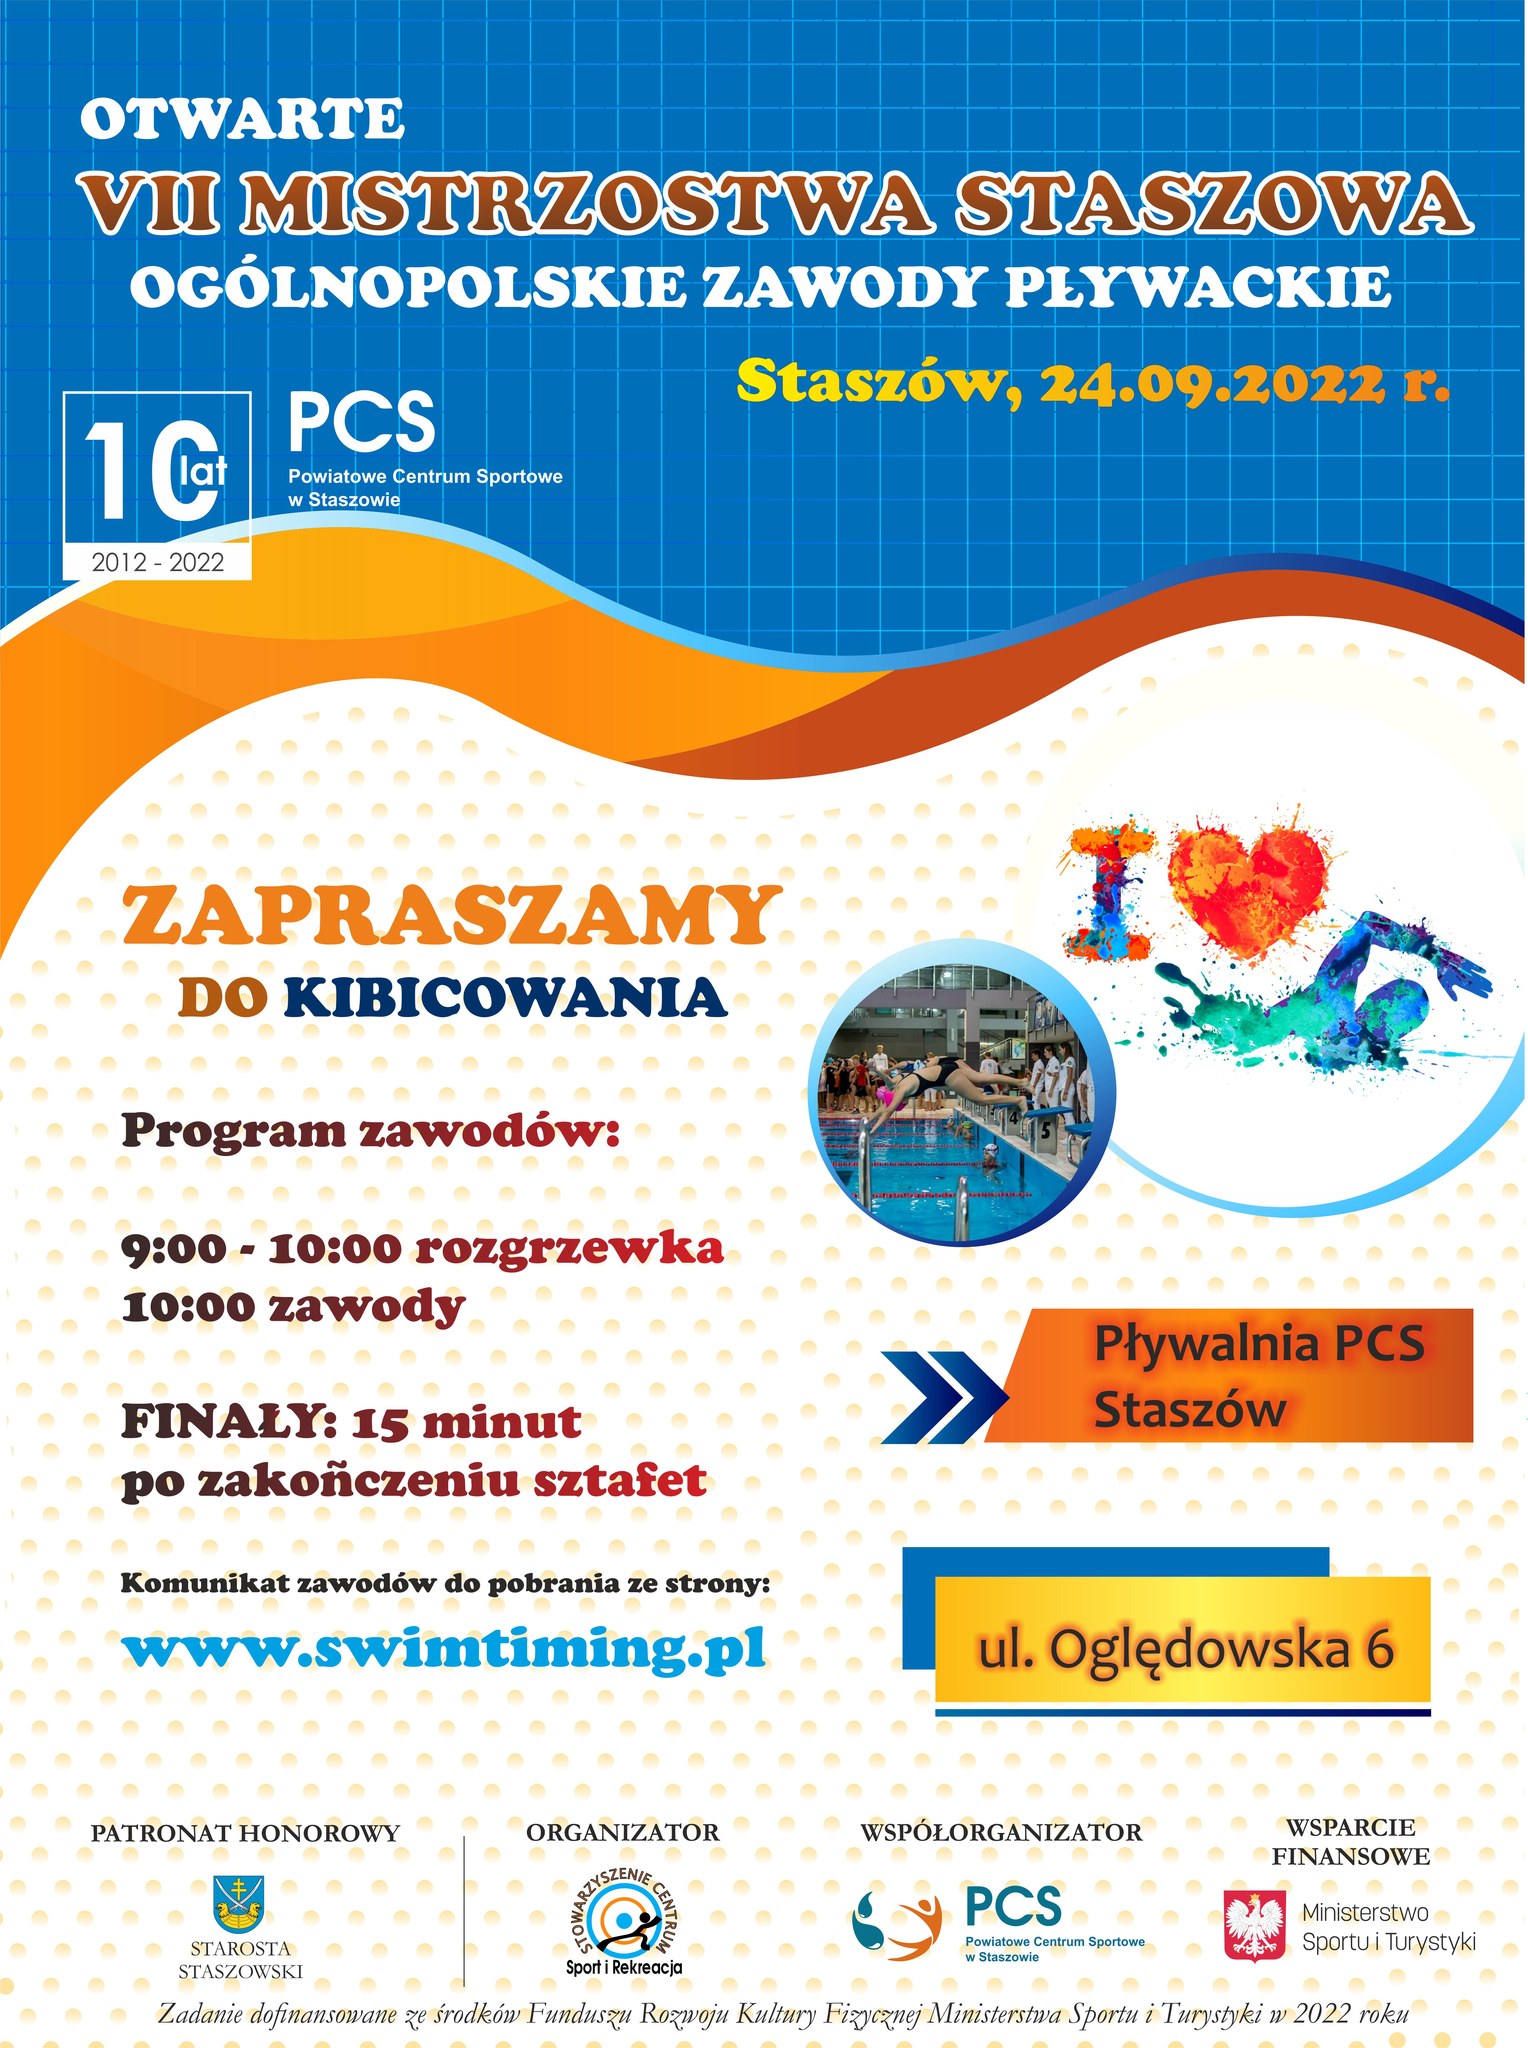 Plakat informacyjny: Otwarte Mistrzostwa Staszowa - Ogólnopolskie zawody pływackie. Zapraszamy do kibicowania w sobotę 24 września na pływalnię PCS.